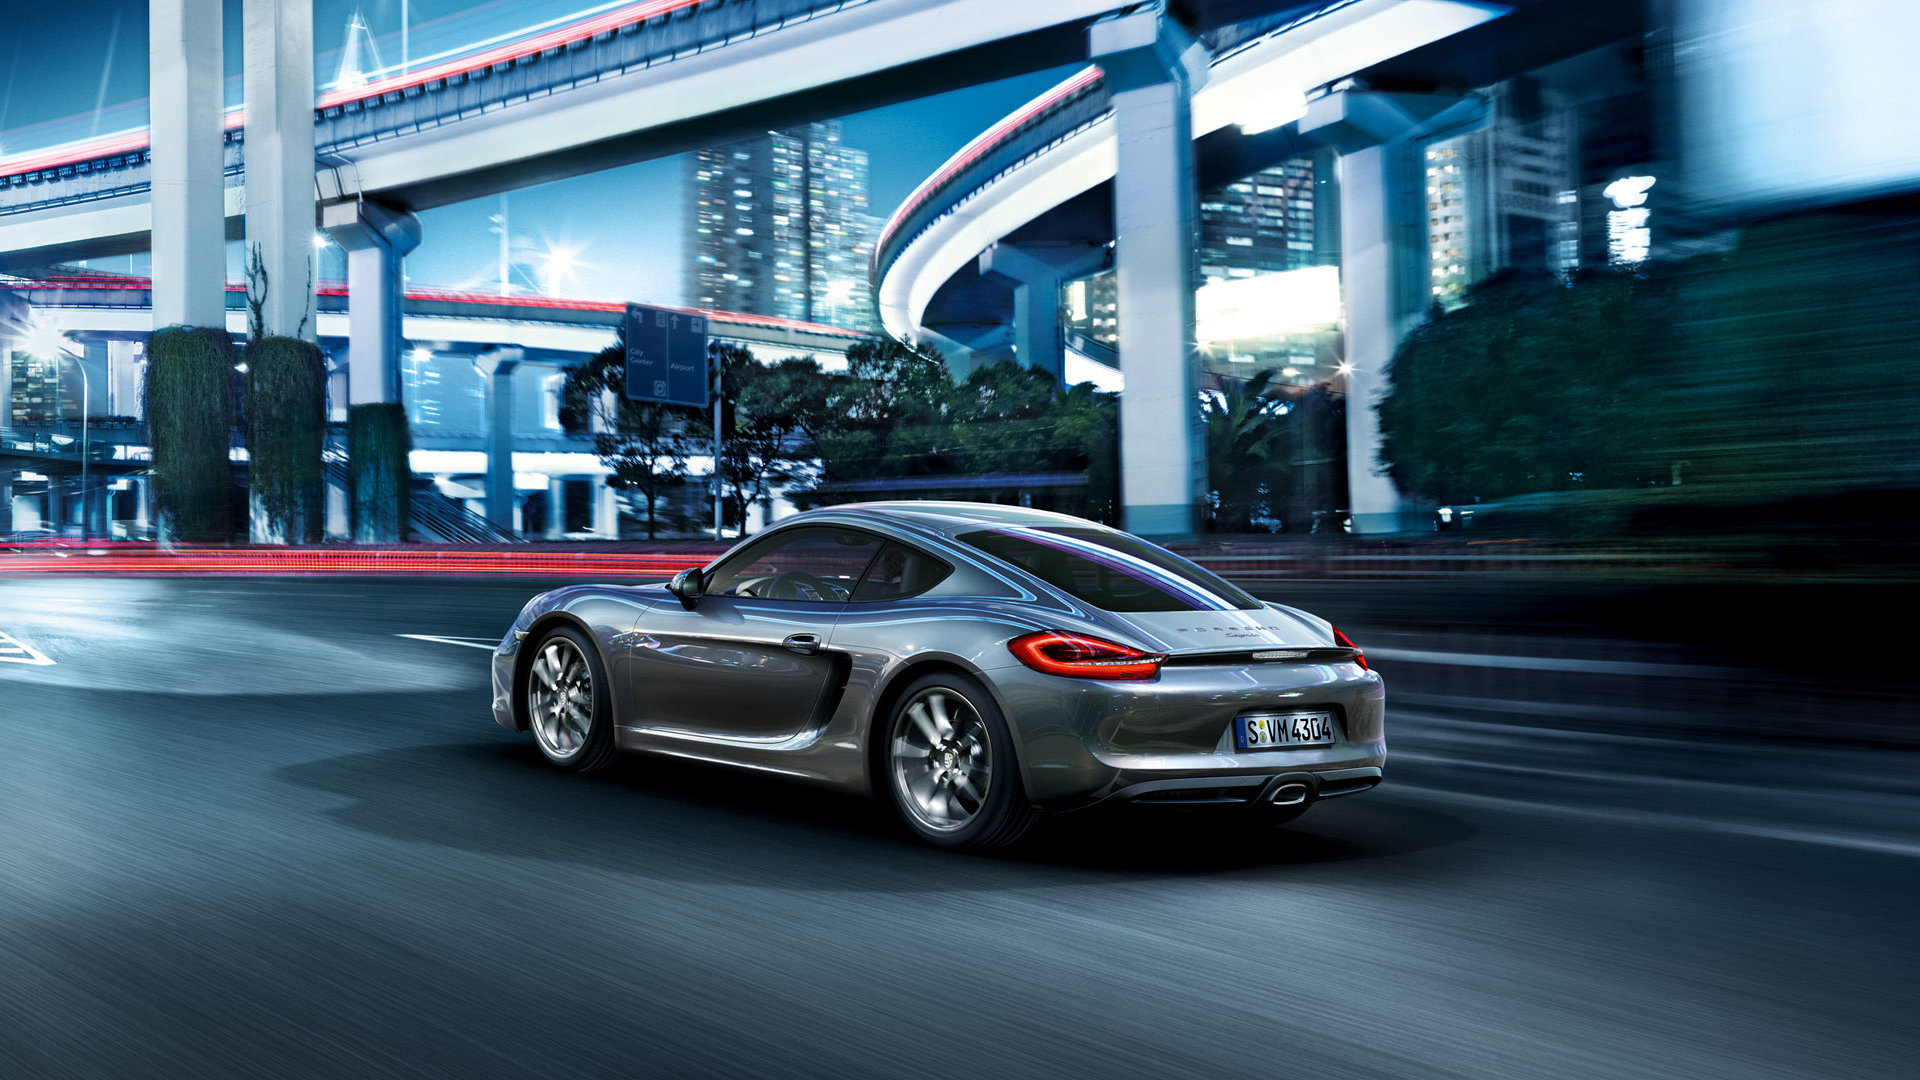 High resolution Porsche Cayman full hd 1080p wallpaper ID:322465 for desktop